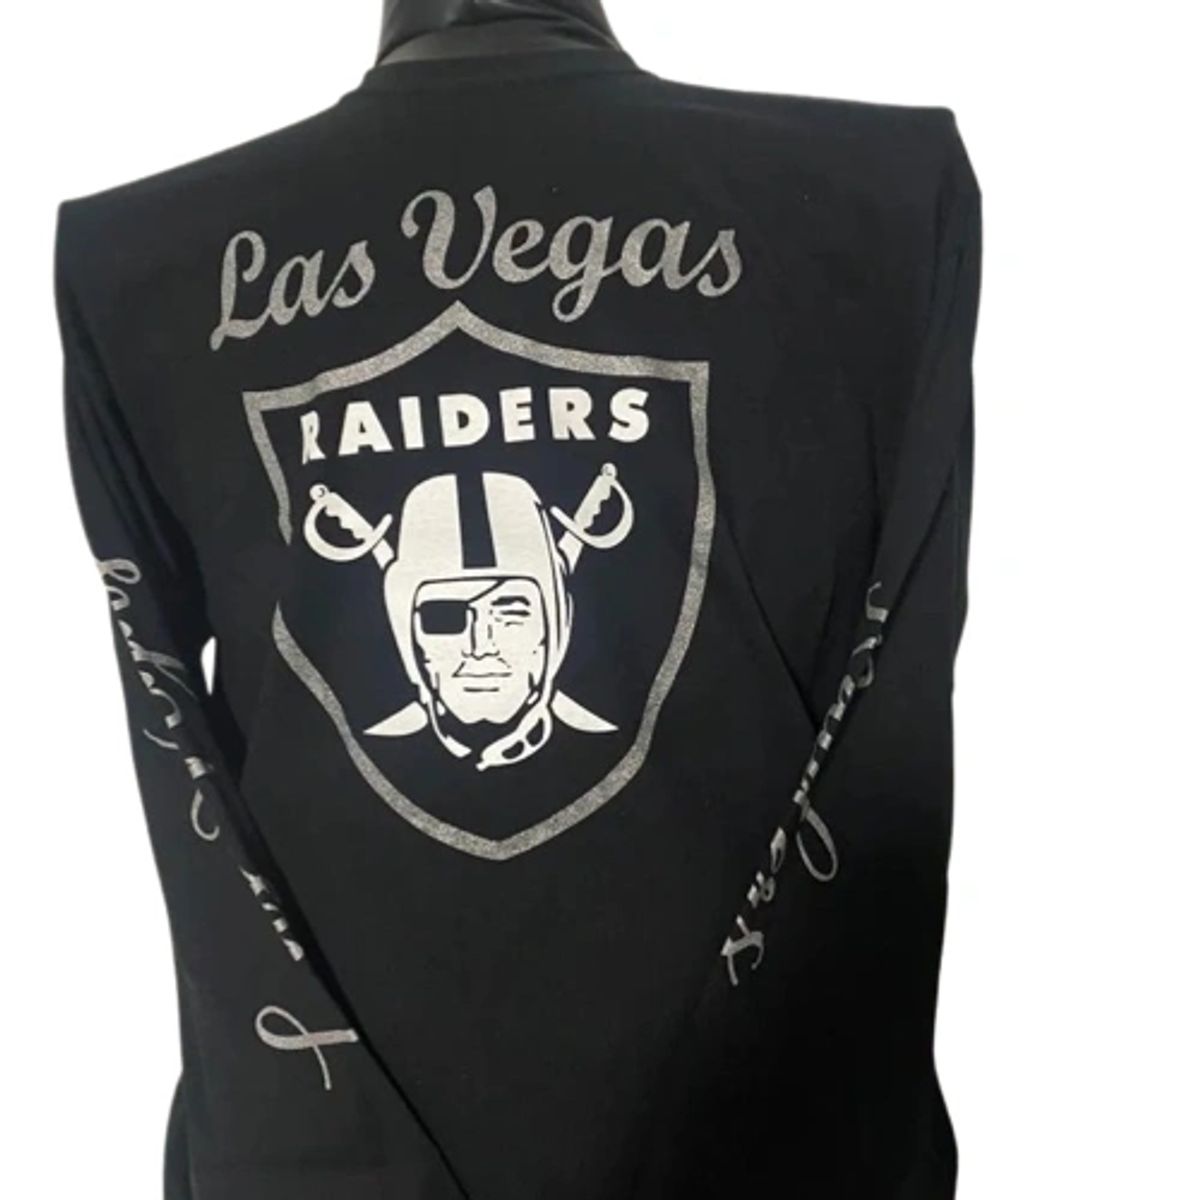 Las Vegas Raiders Long Sleeve T-Shirt (M)